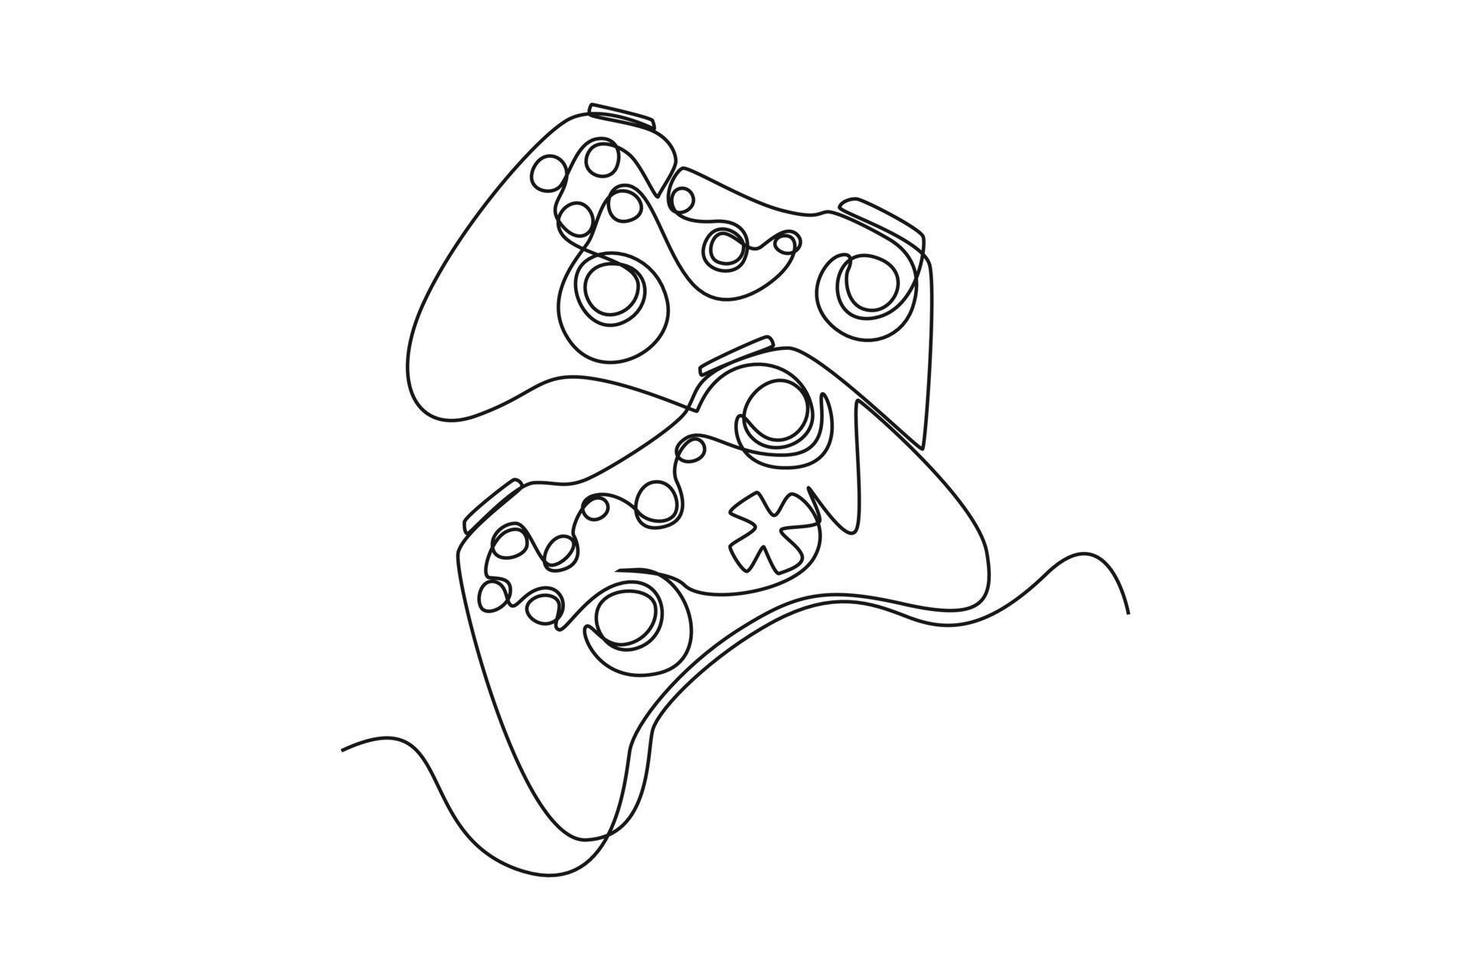 gamepad de dibujo de una sola línea de consolas de juegos. concepto de juego de deportes electrónicos. ilustración de vector gráfico de diseño de dibujo de línea continua.